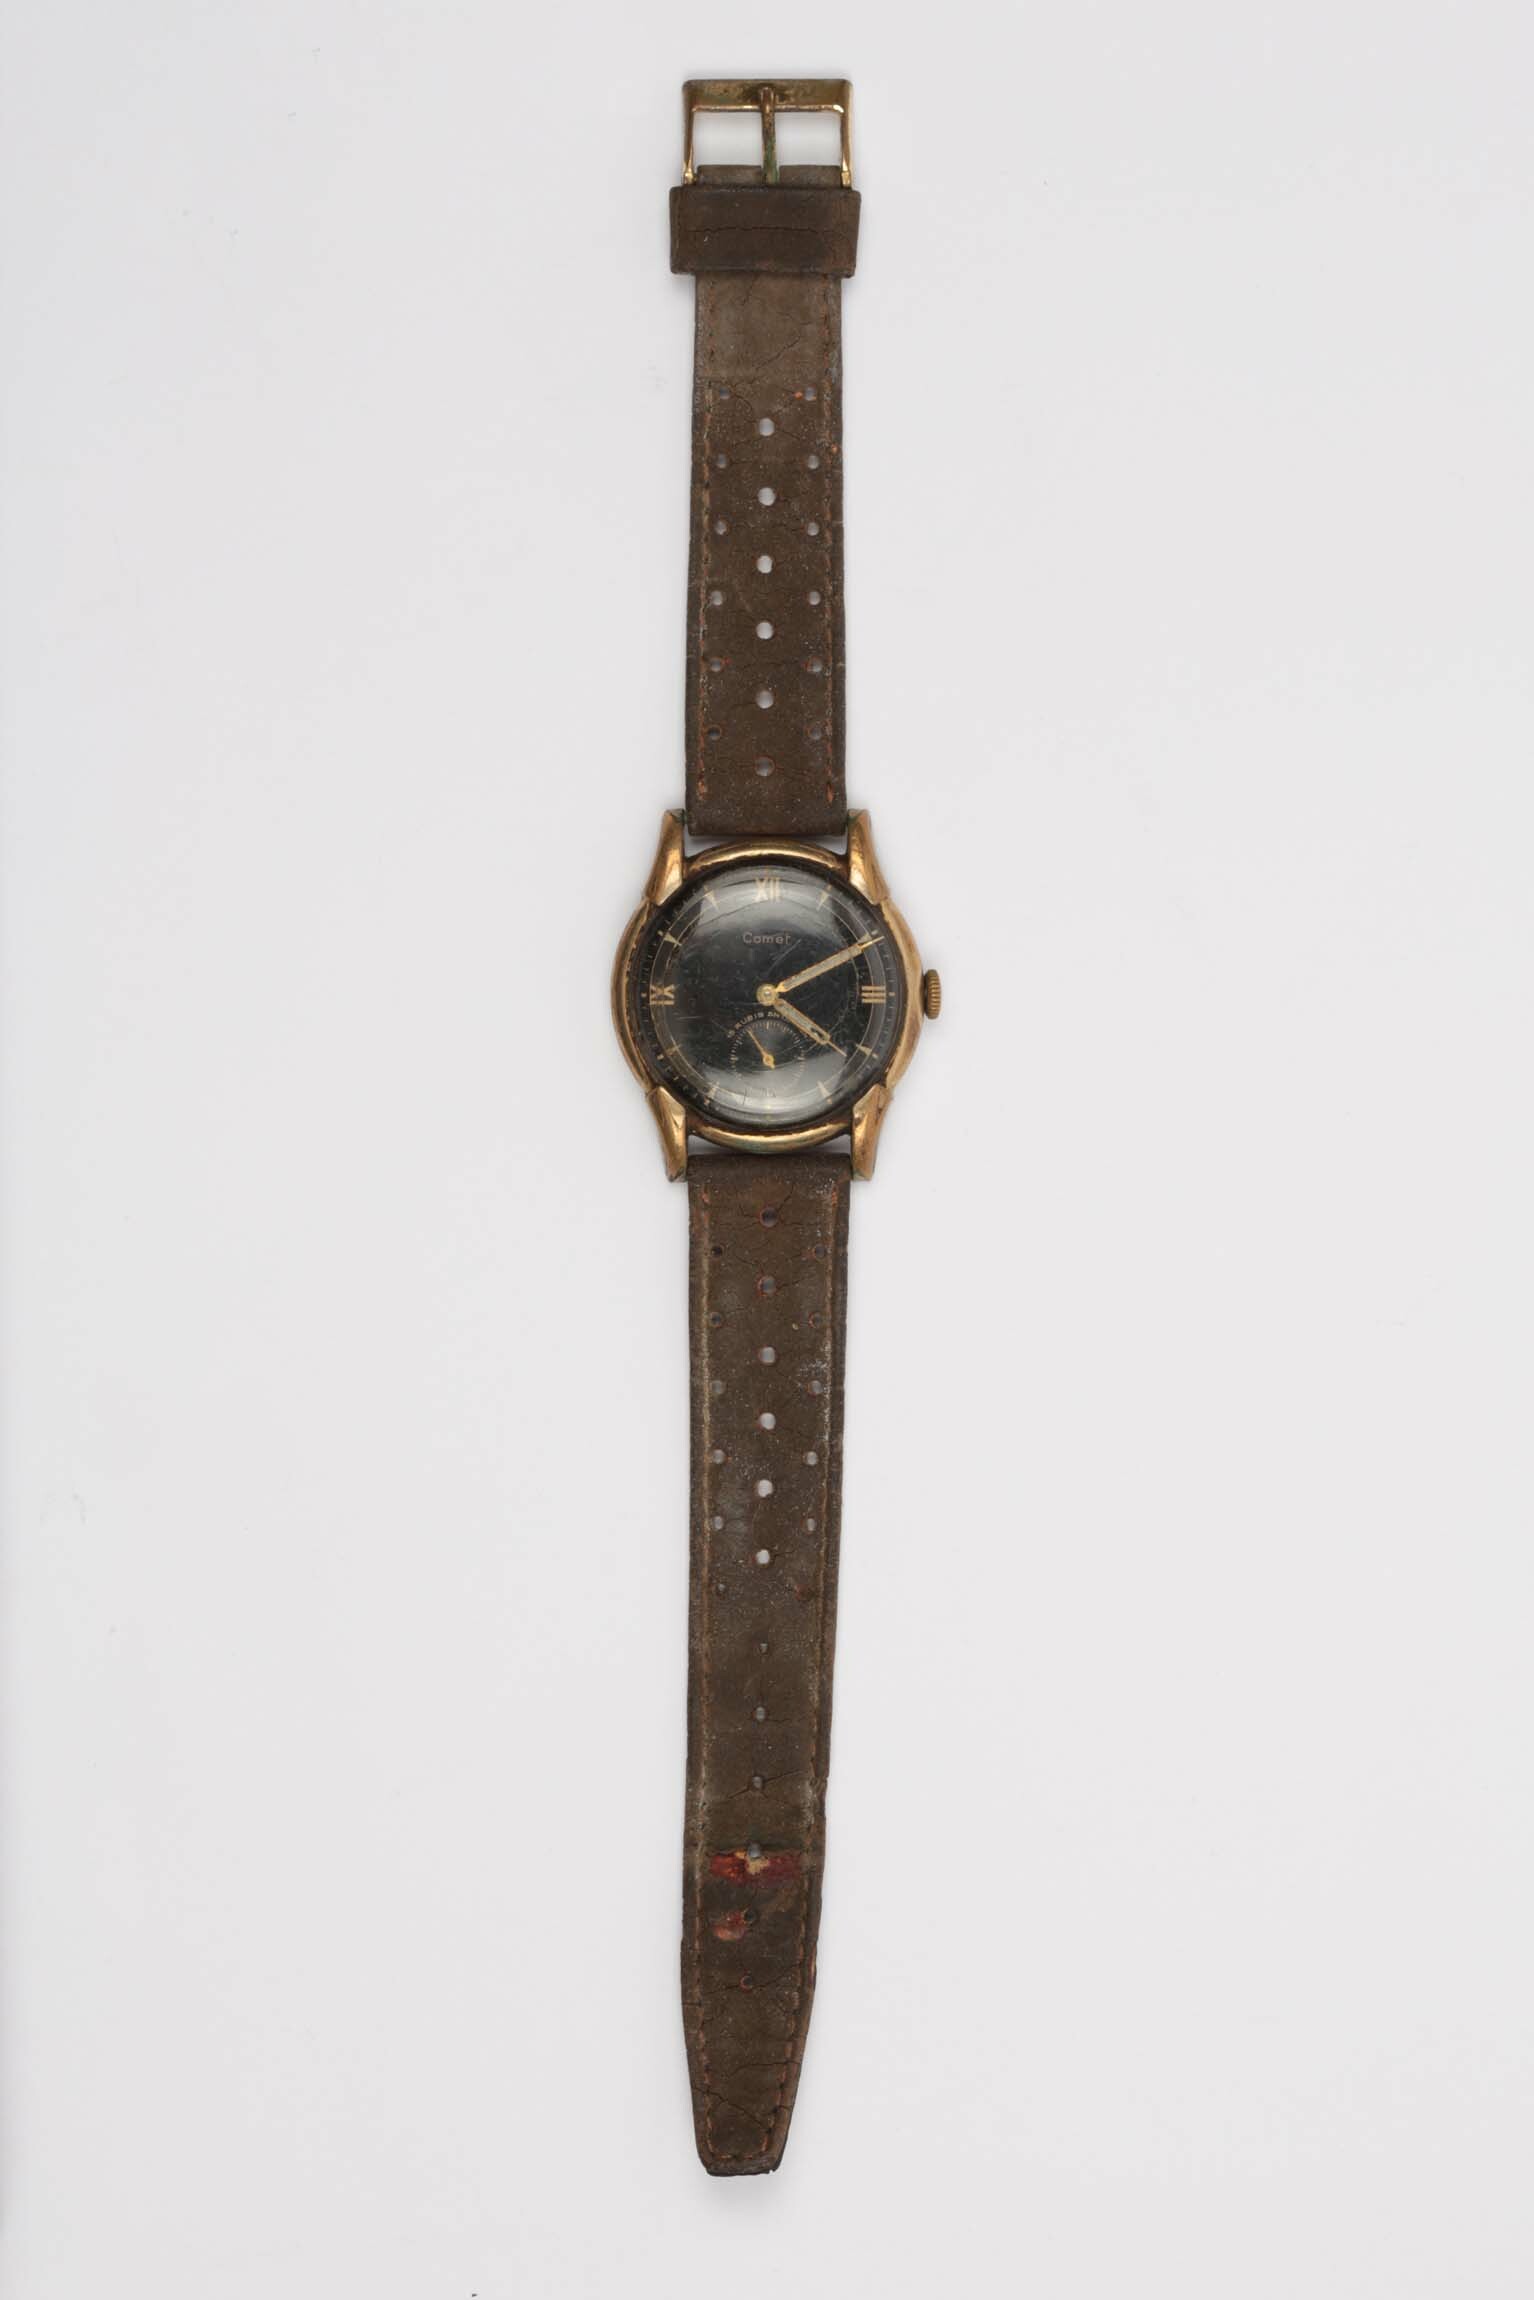 Armbanduhr, Mauthe, Schwenningen um 1960 (Deutsches Uhrenmuseum CC BY-SA)